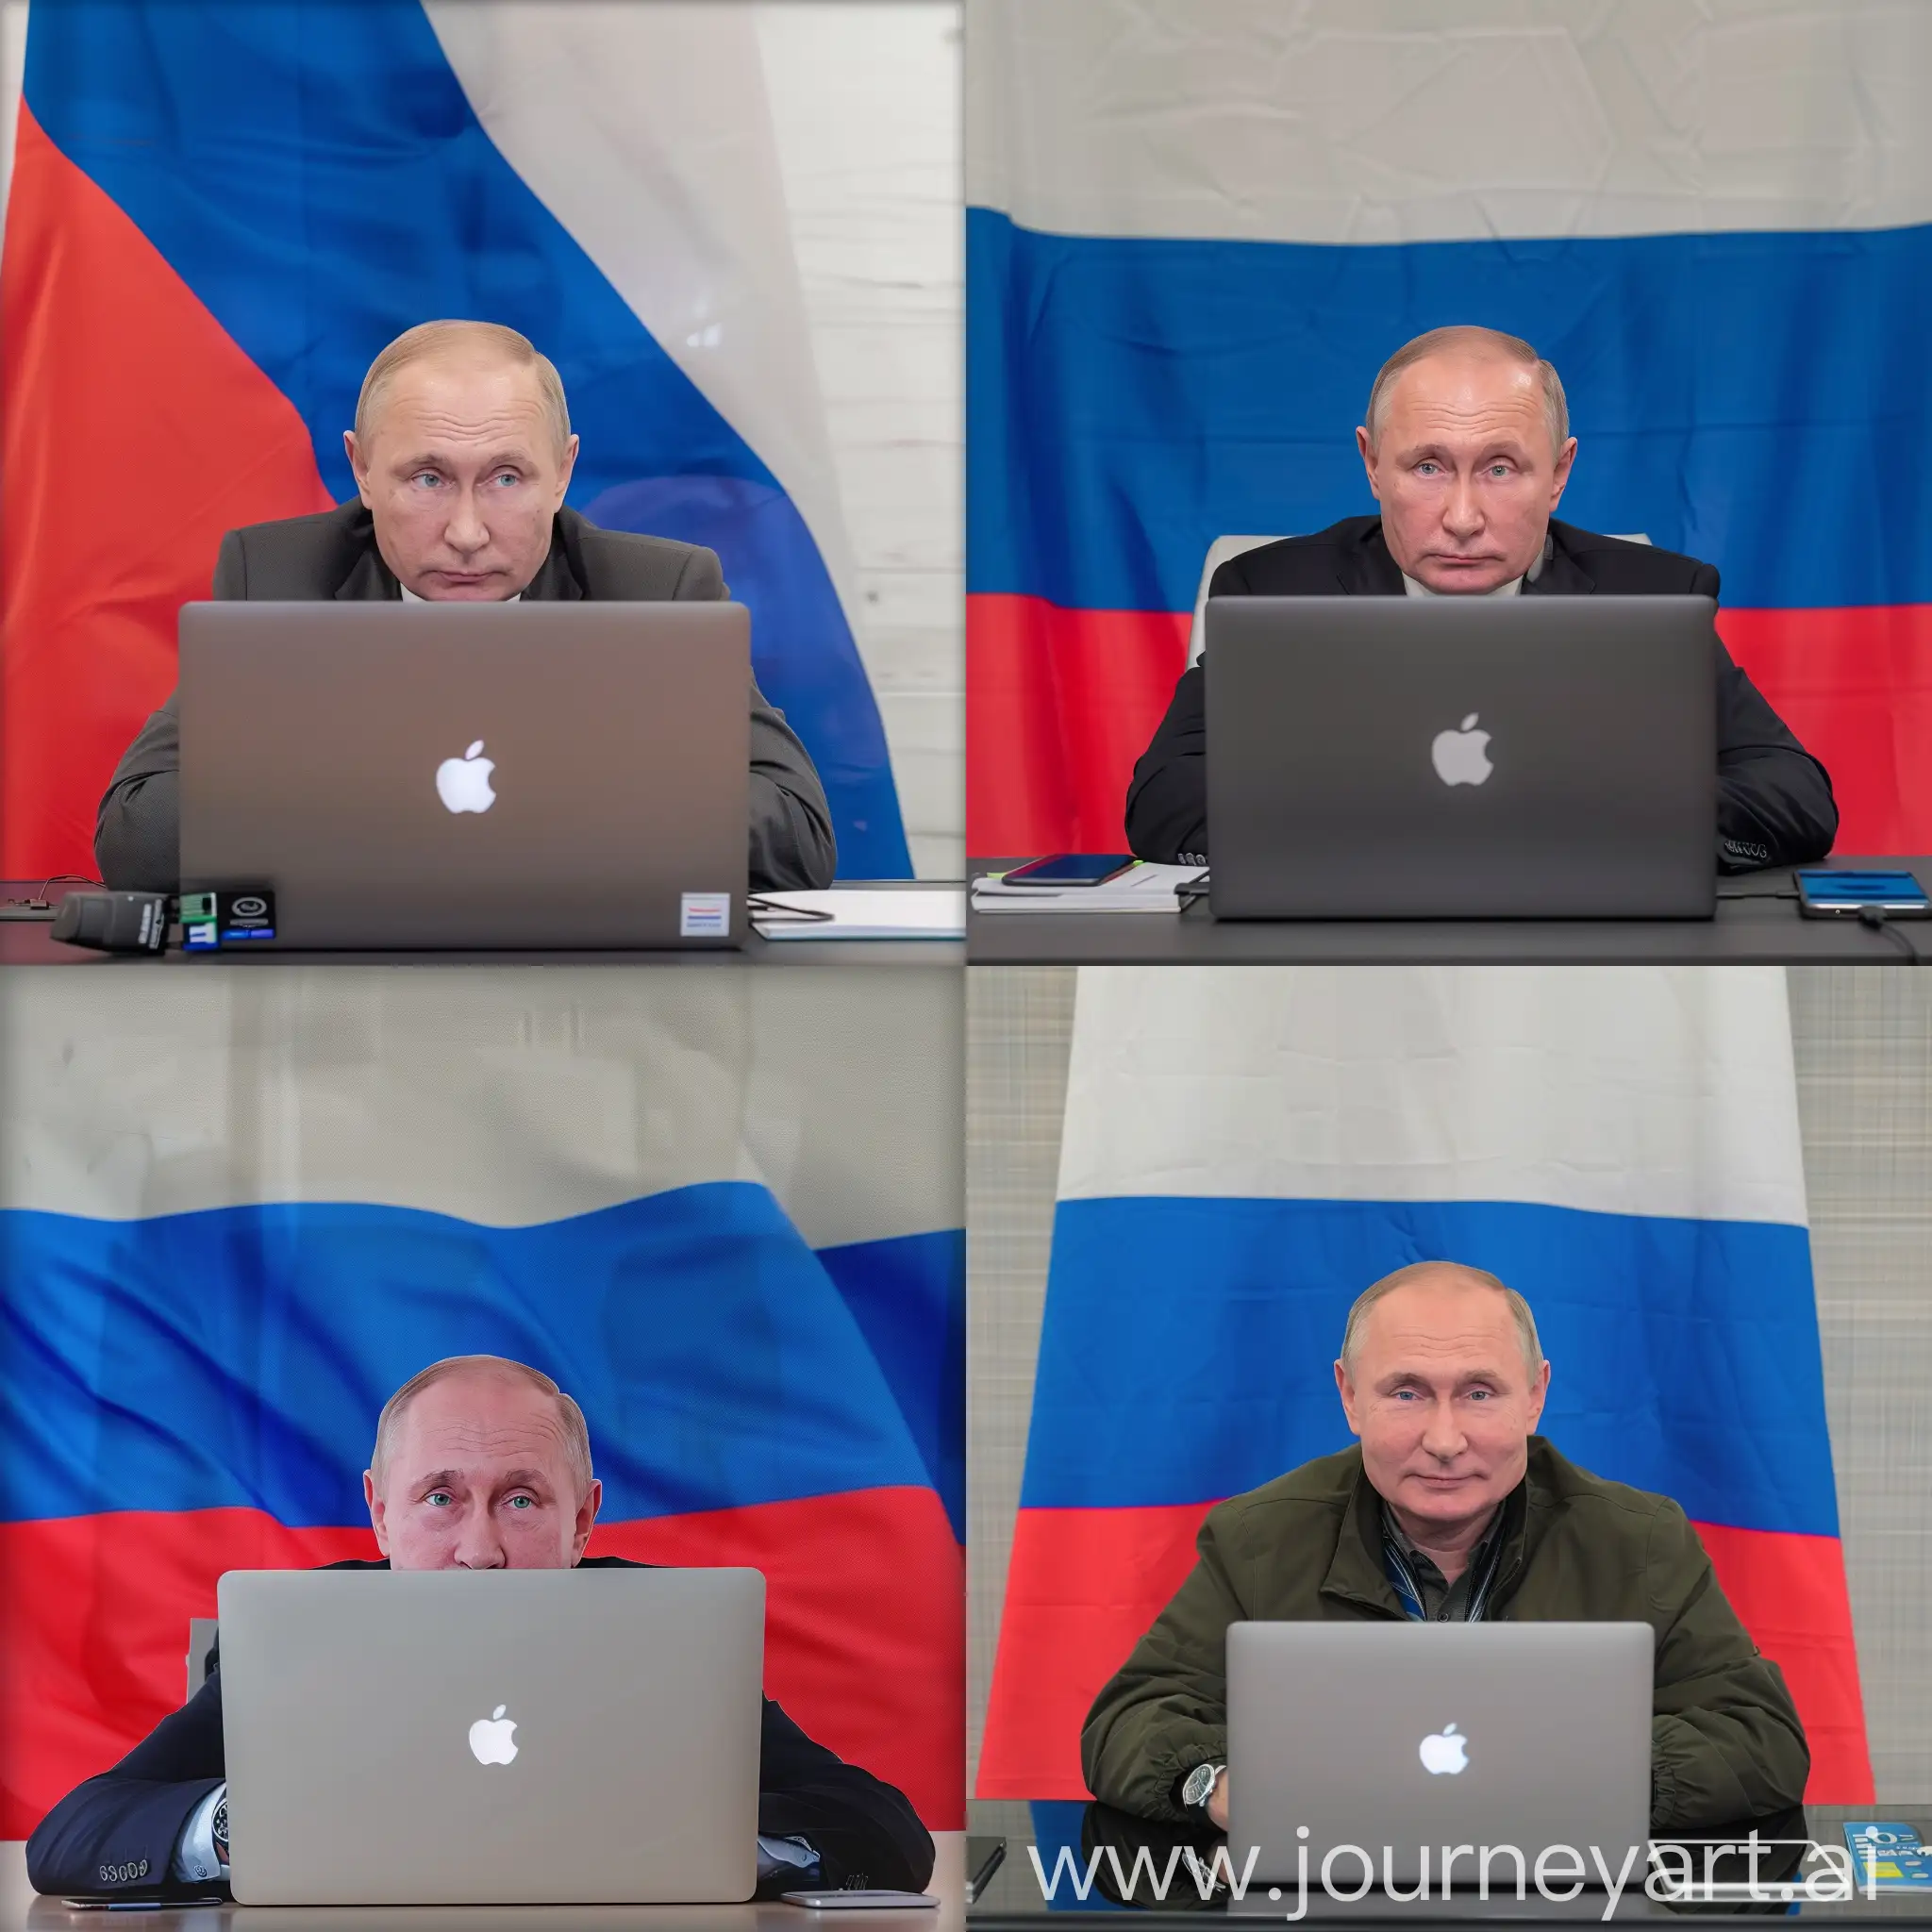 Владимир Путин, сидит за macbook, ничего лишнего на столе, задний фон флаг России, HDR, крупный план, профессиональное освещение